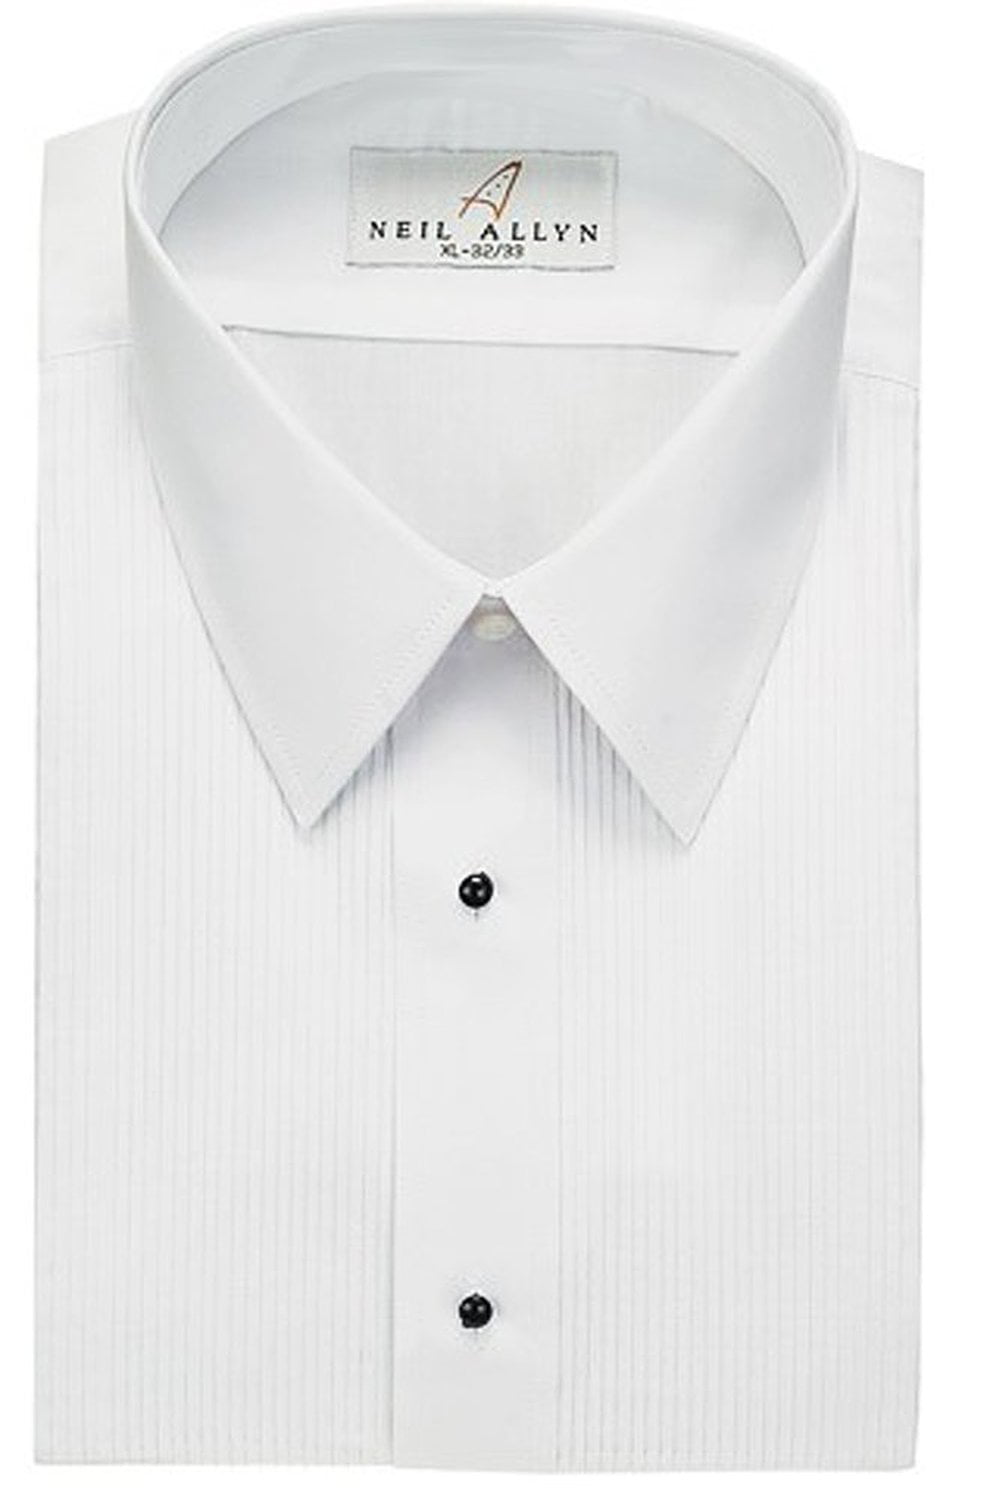 White Neil Allyn Men's 100% Cotton Tuxedo Shirt 32/33 Slim Fit 18 